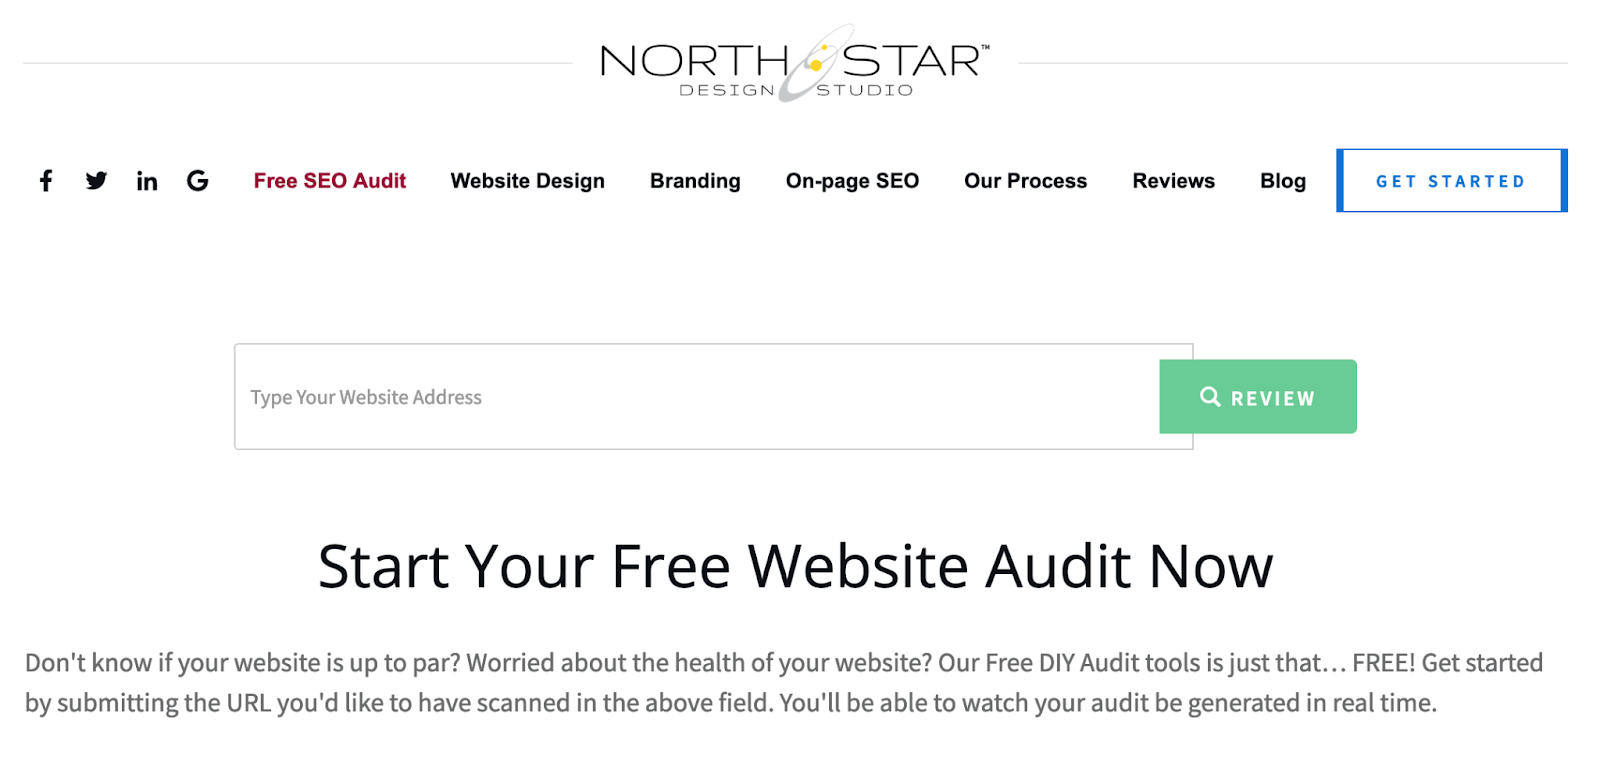 Free SEO Audit for websites